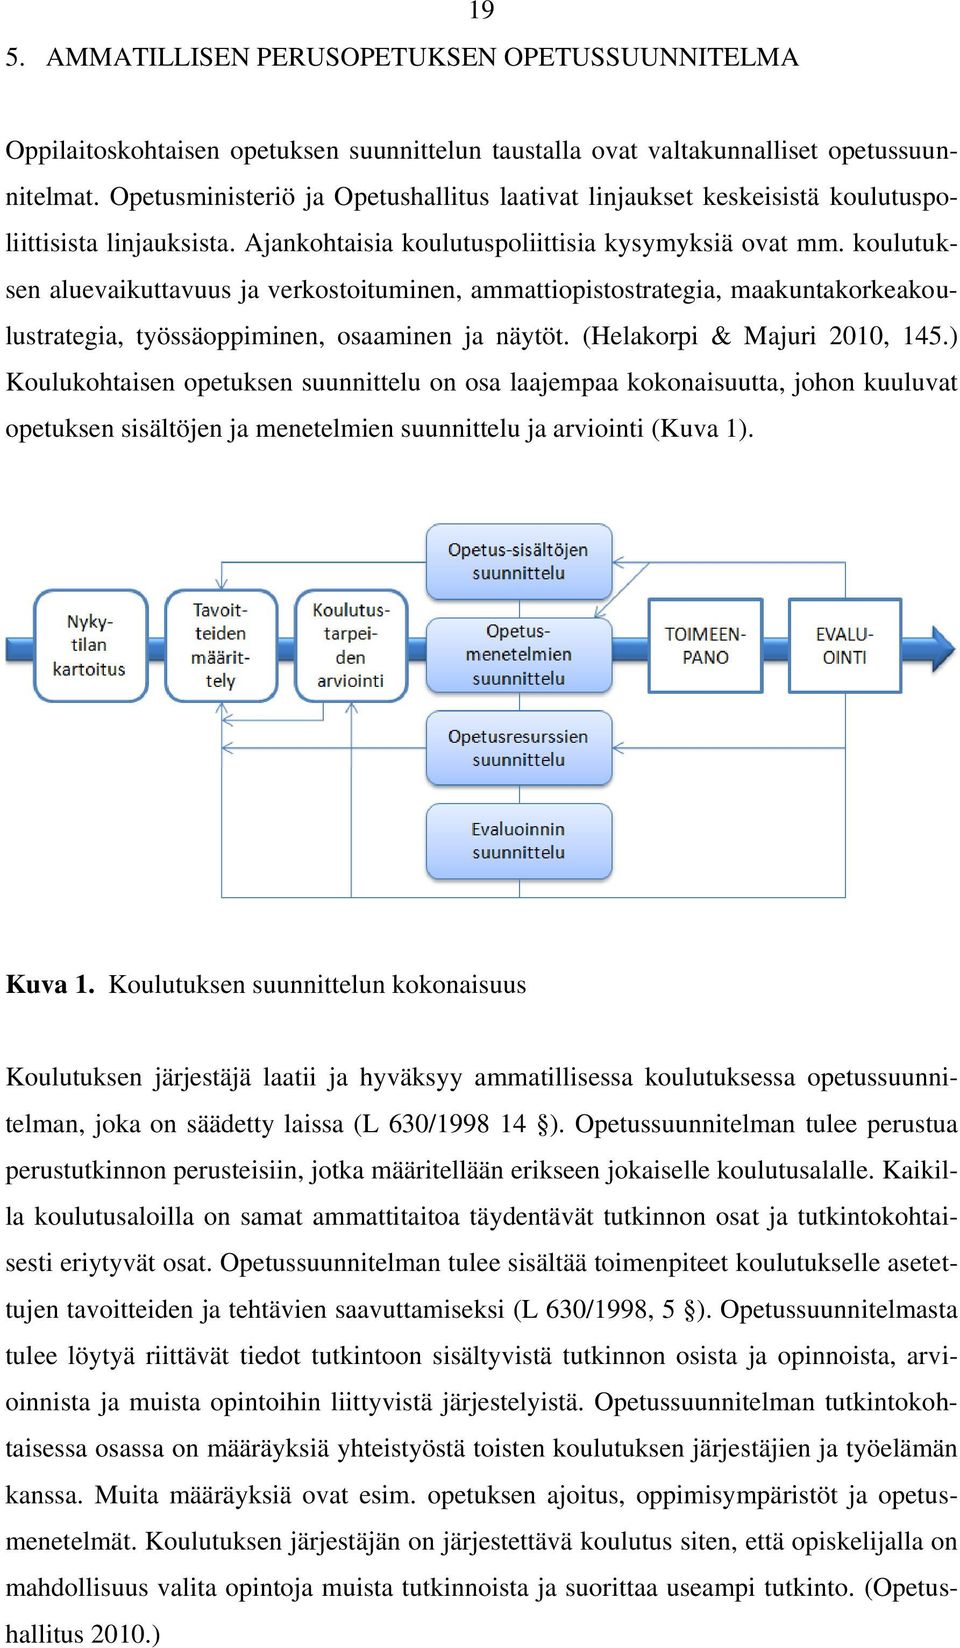 koulutuksen aluevaikuttavuus ja verkostoituminen, ammattiopistostrategia, maakuntakorkeakoulustrategia, työssäoppiminen, osaaminen ja näytöt. (Helakorpi & Majuri 2010, 145.